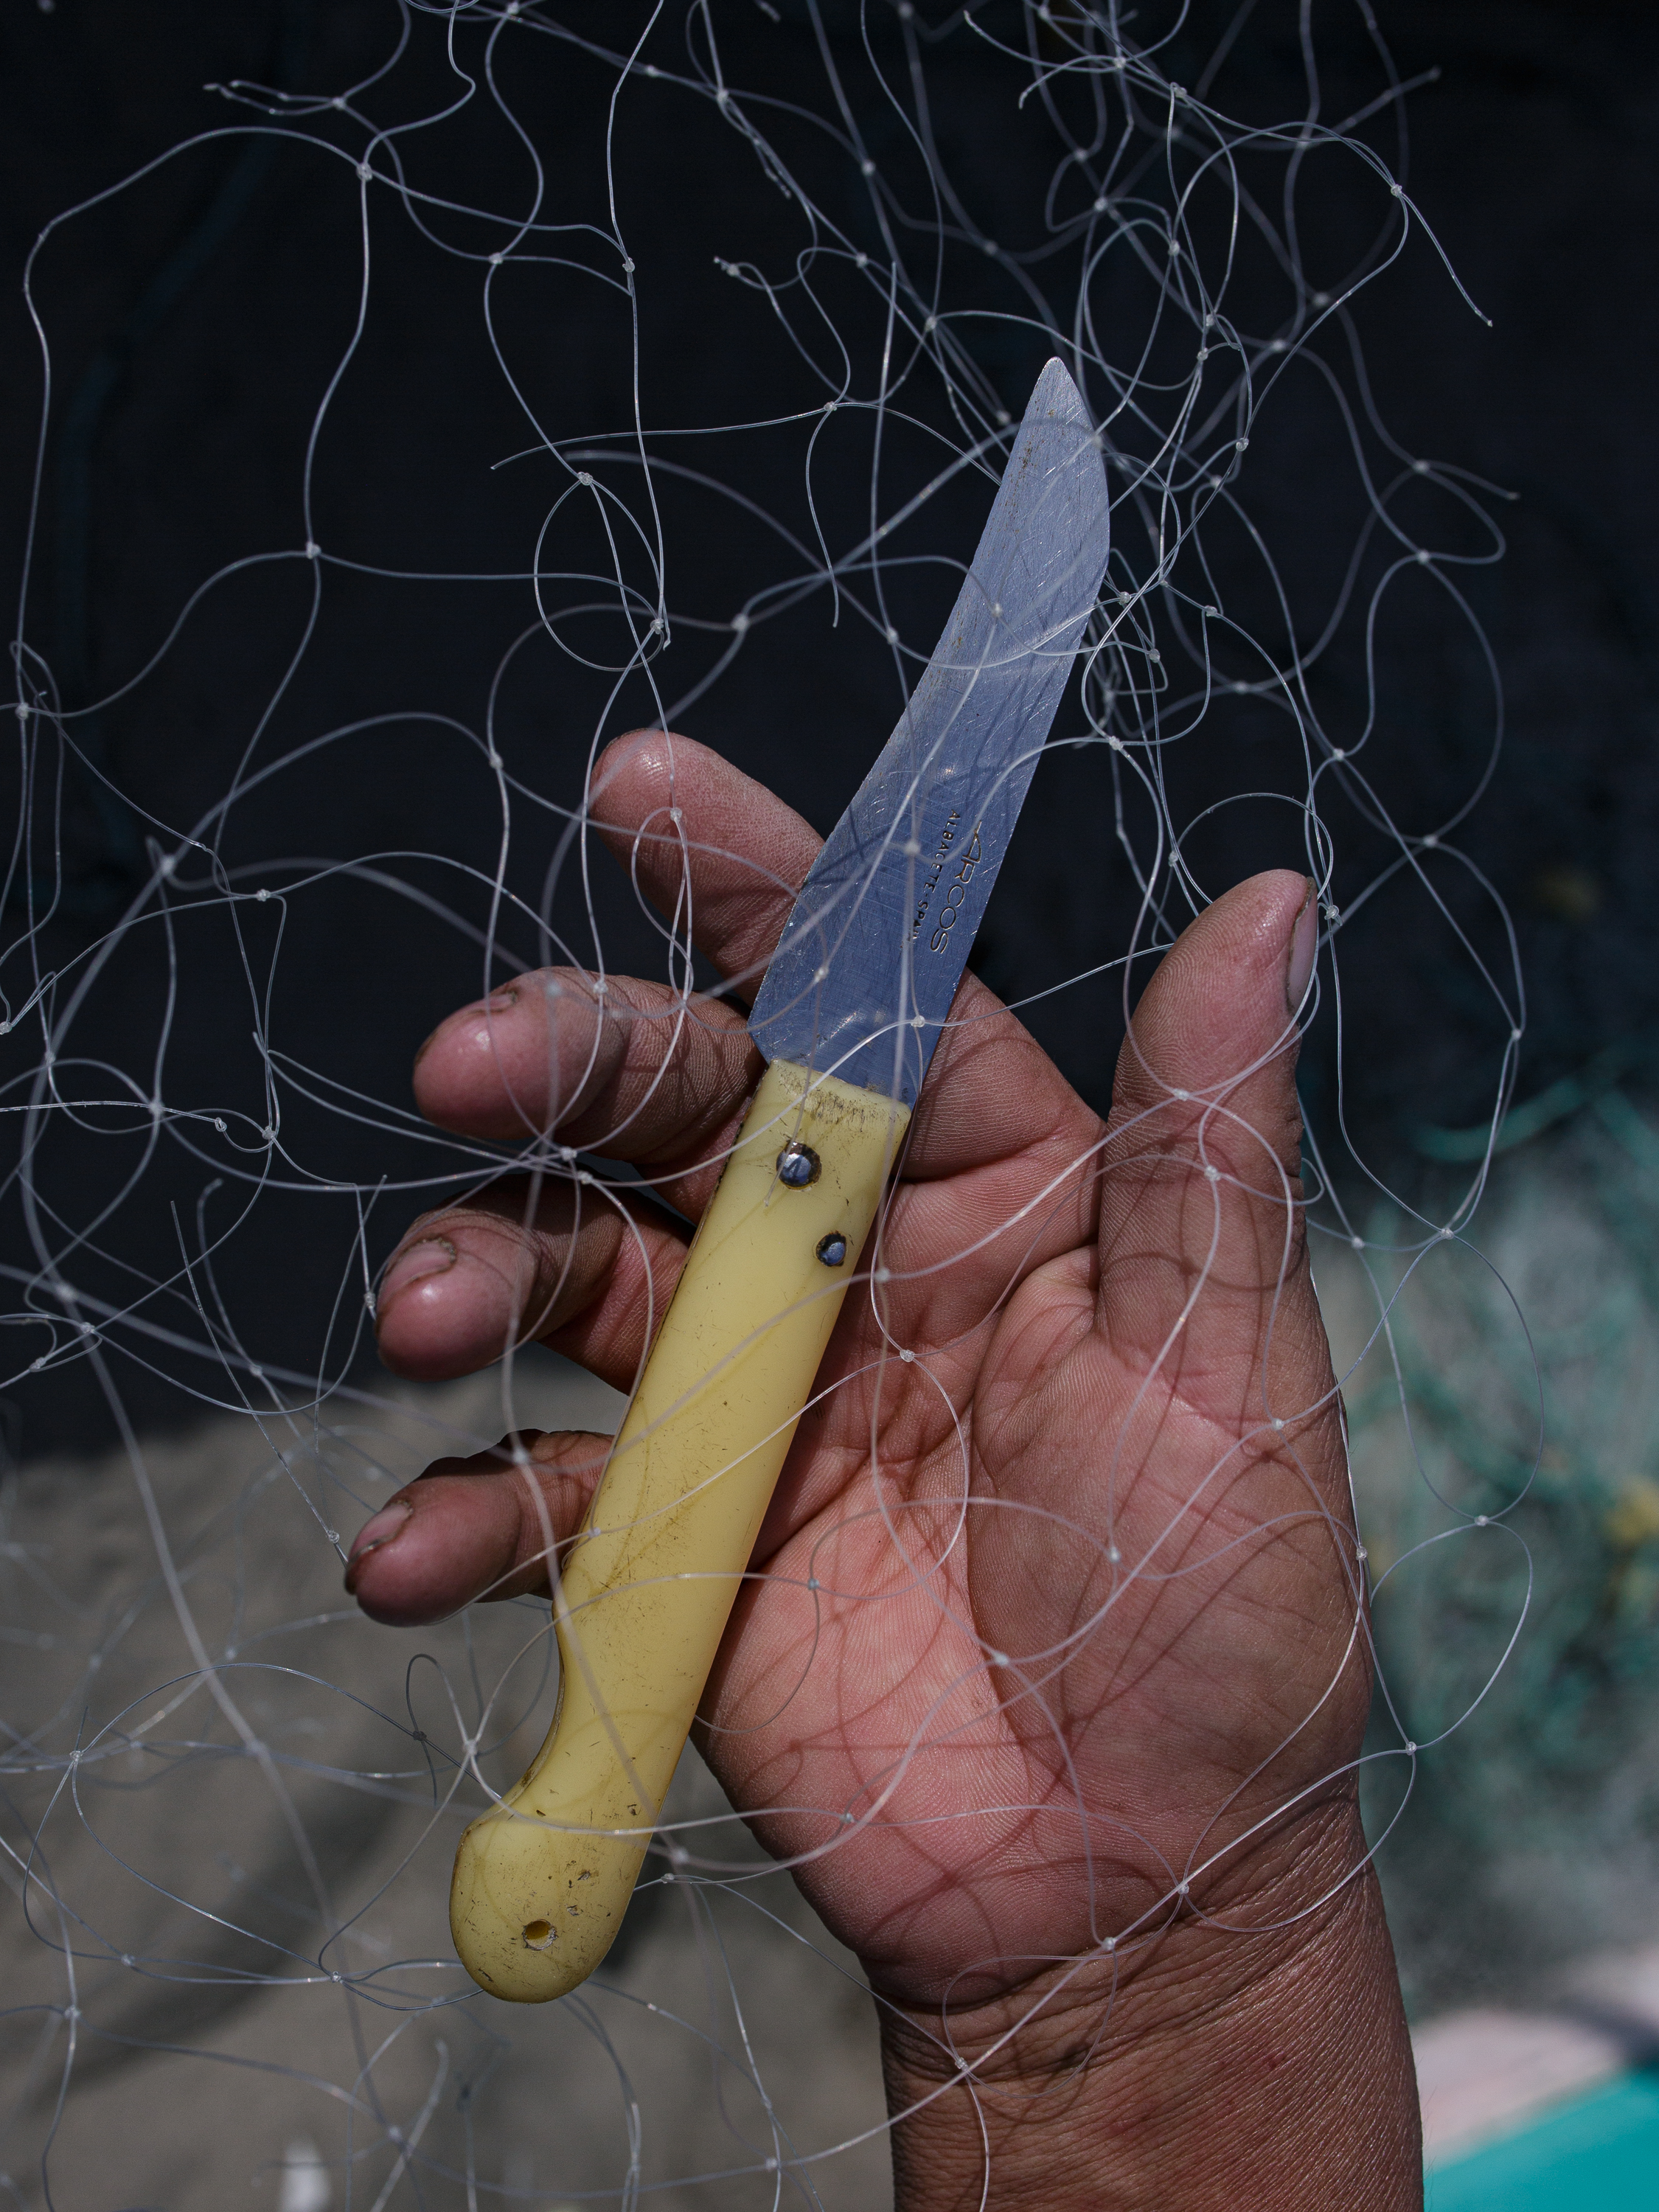 knife held near net